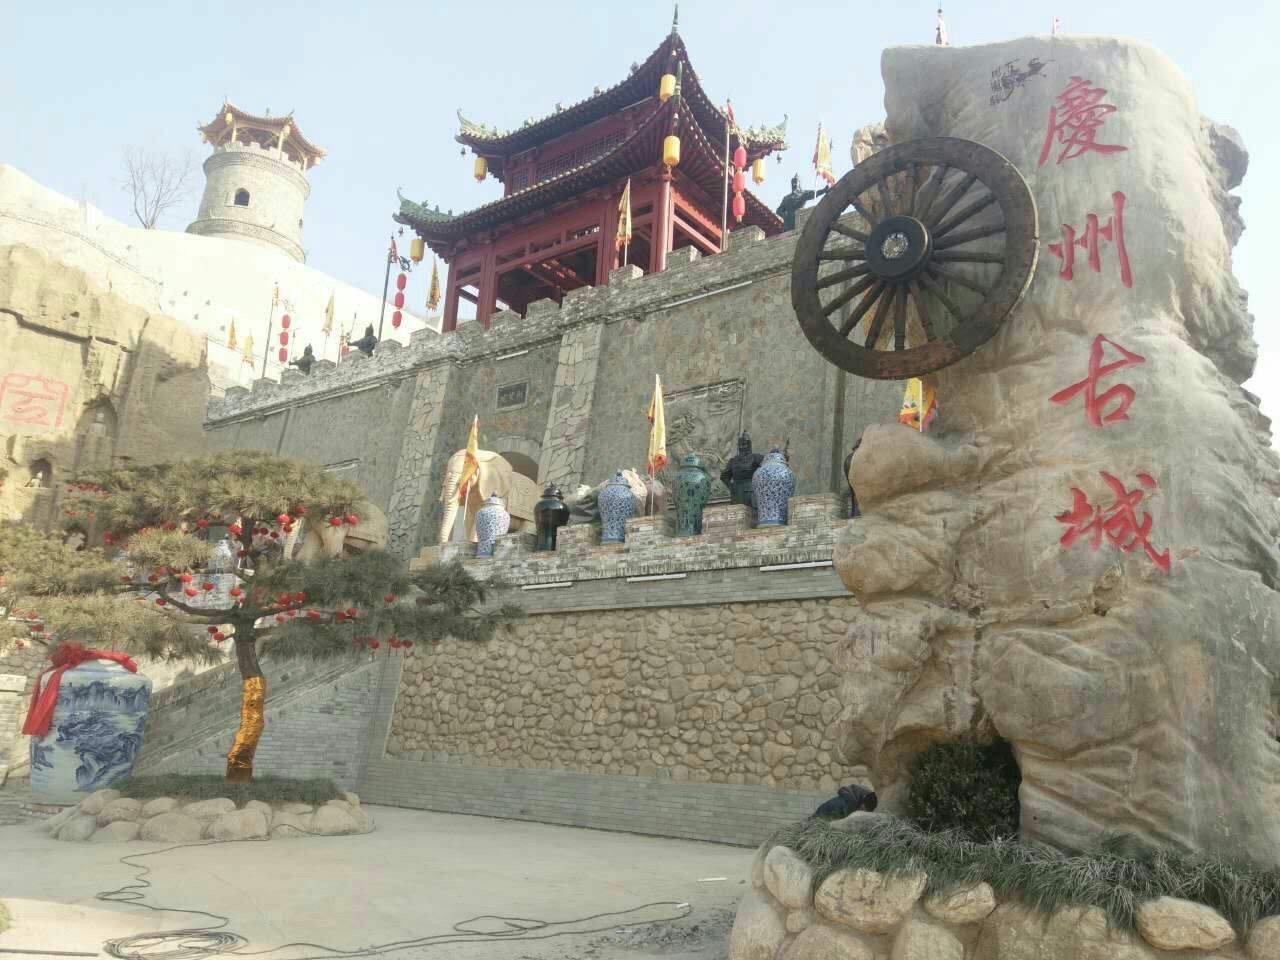 #值得去的古镇古村 庆州古城，位于中国甘肃省庆阳市庆城县，是一个有着悠久历史的古城，被誉为“活着的千